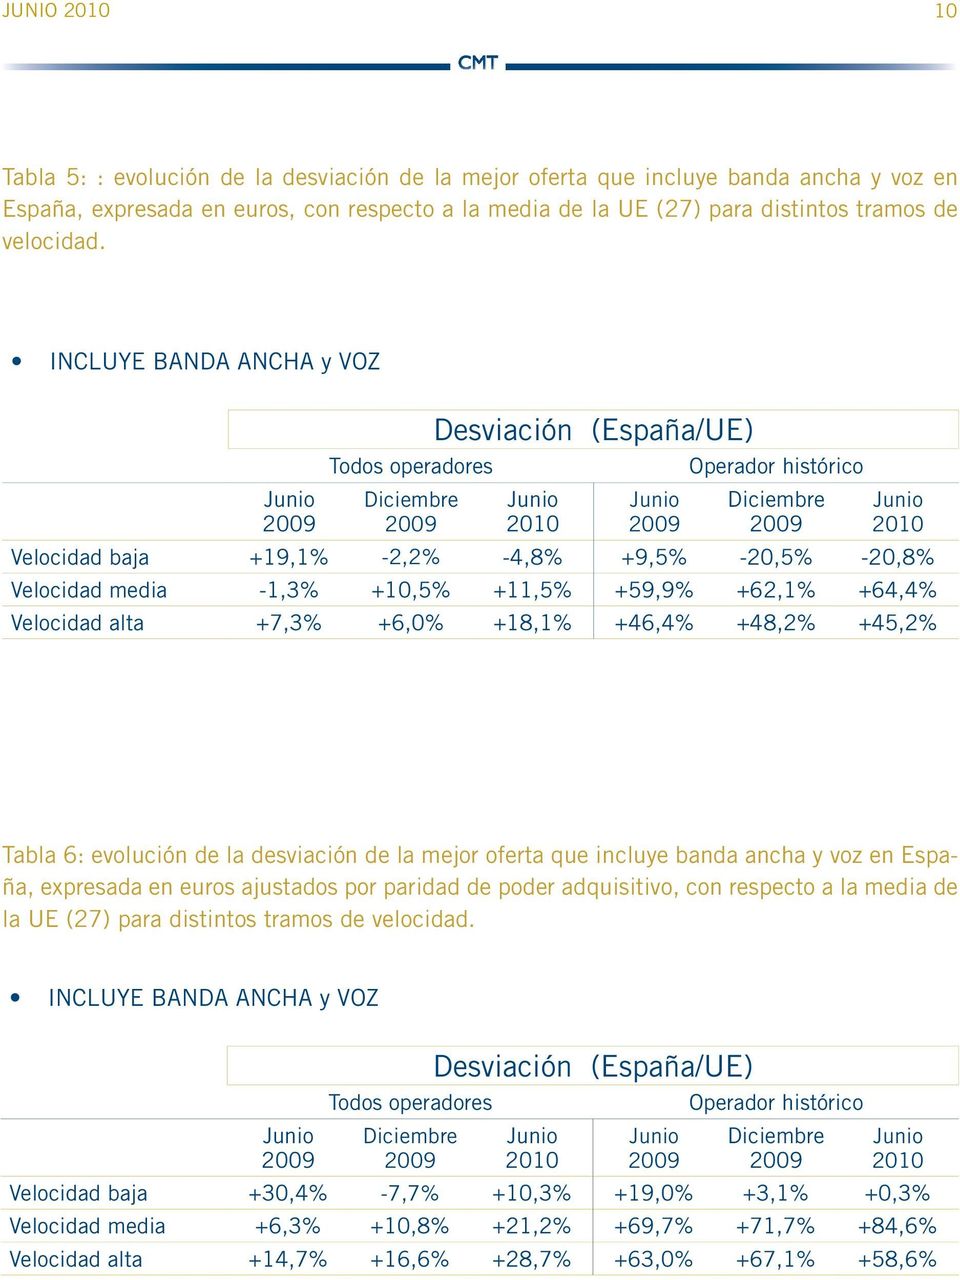 INCLUYE BANDA ANCHA y VOZ Junio 9 Todos operadores Diciembre 9 Desviación (España/UE) Junio 1 Junio 9 Operador histórico Diciembre 9 Junio 1 Velocidad baja +19,1% -2,2% -4,8% +9,5% -,5% -,8%